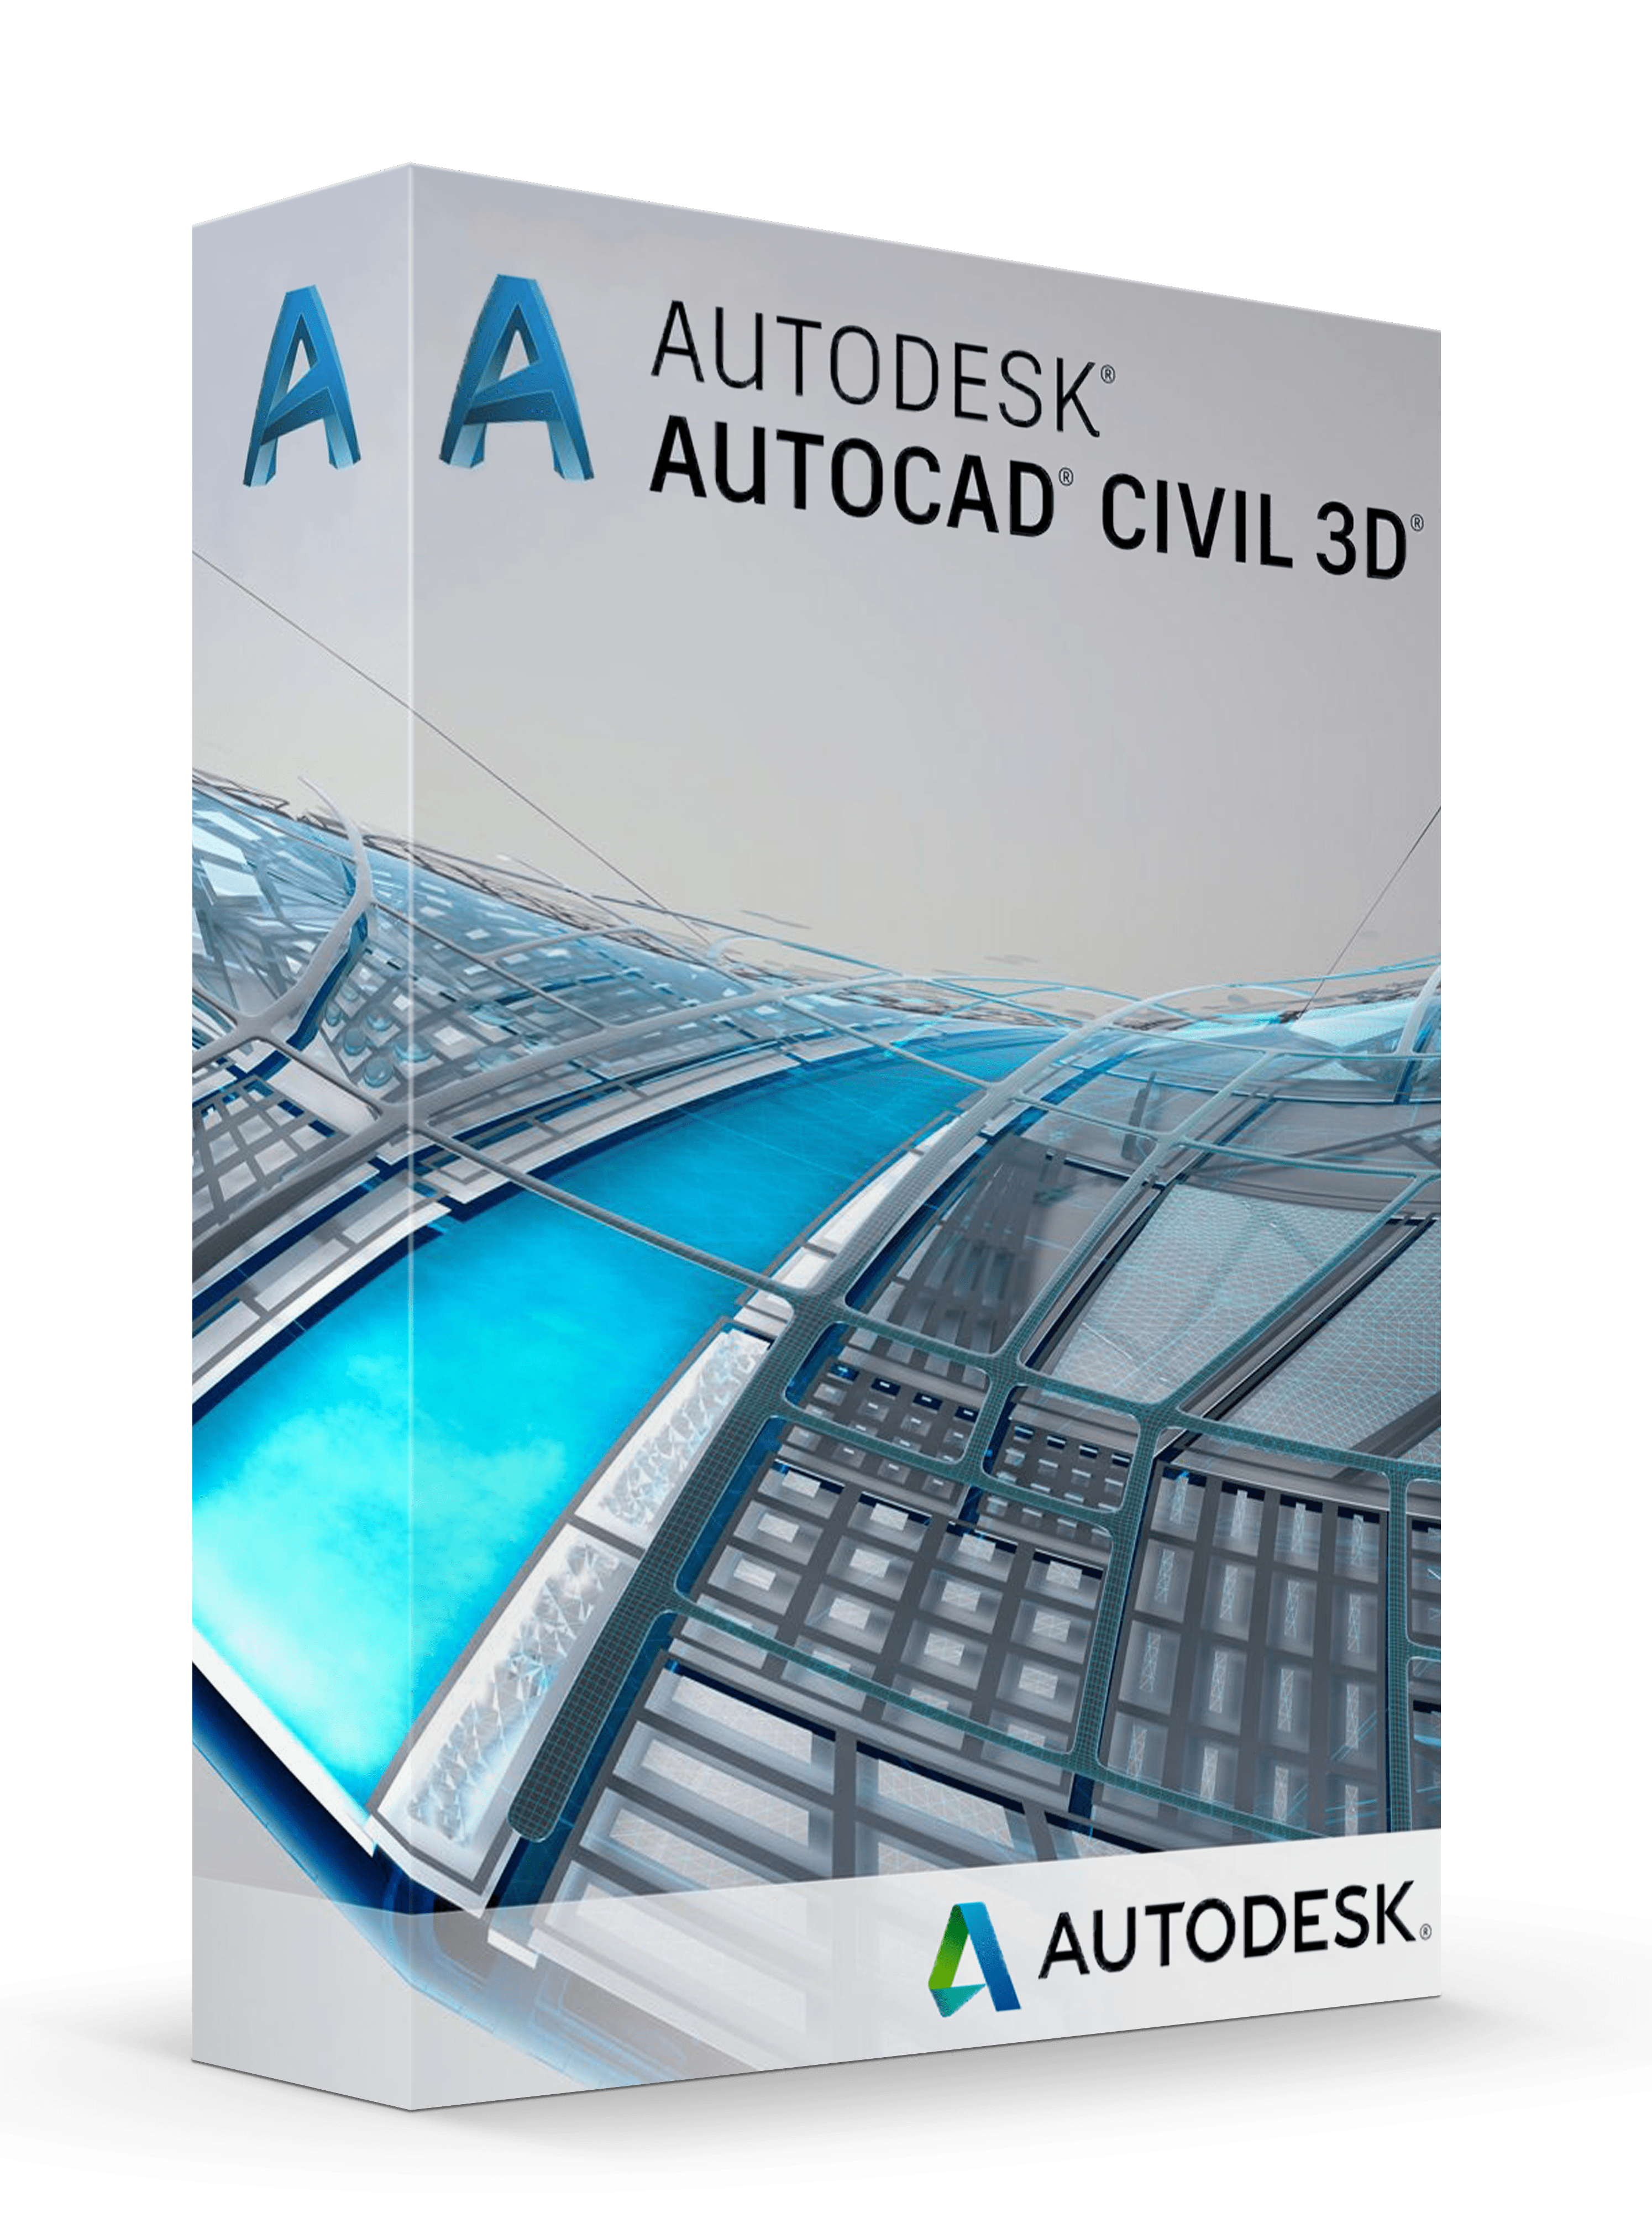 autodesk civil 3d 2022 fundamentals